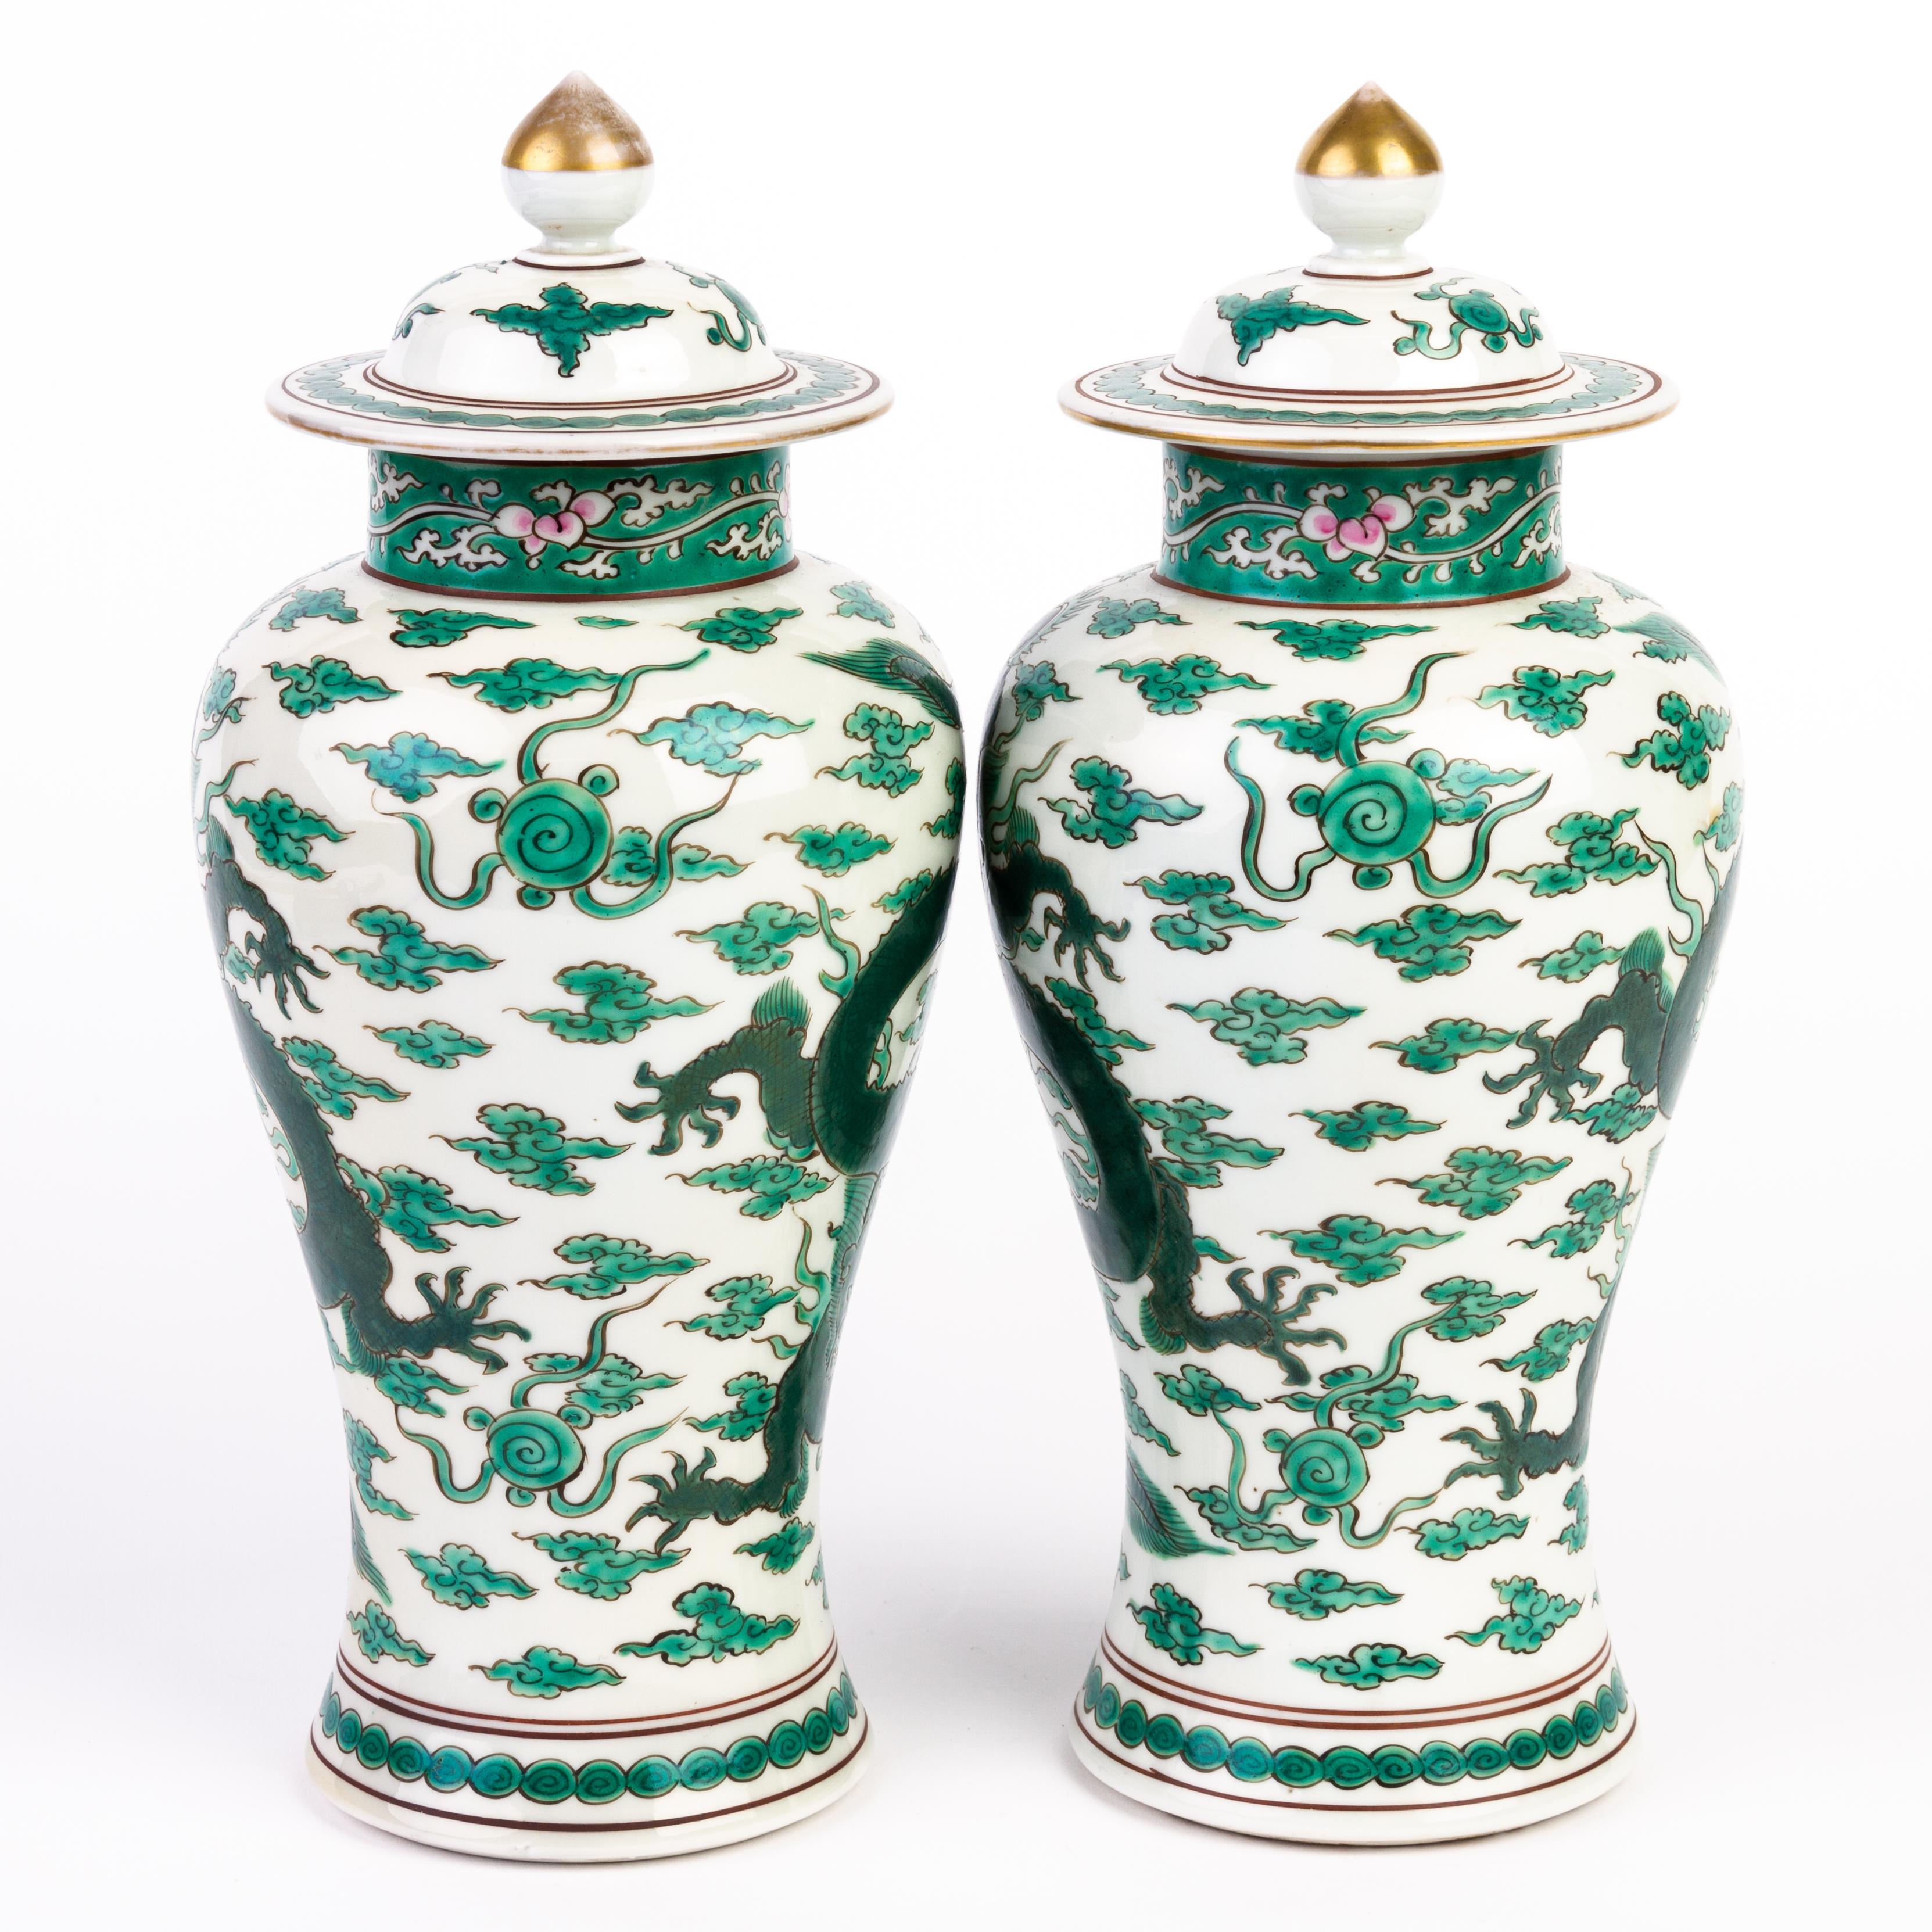 Provenant d'une collection privée.
Expédition internationale gratuite.
Vases chinois en porcelaine Famille Verte avec dragon tourbillonnant